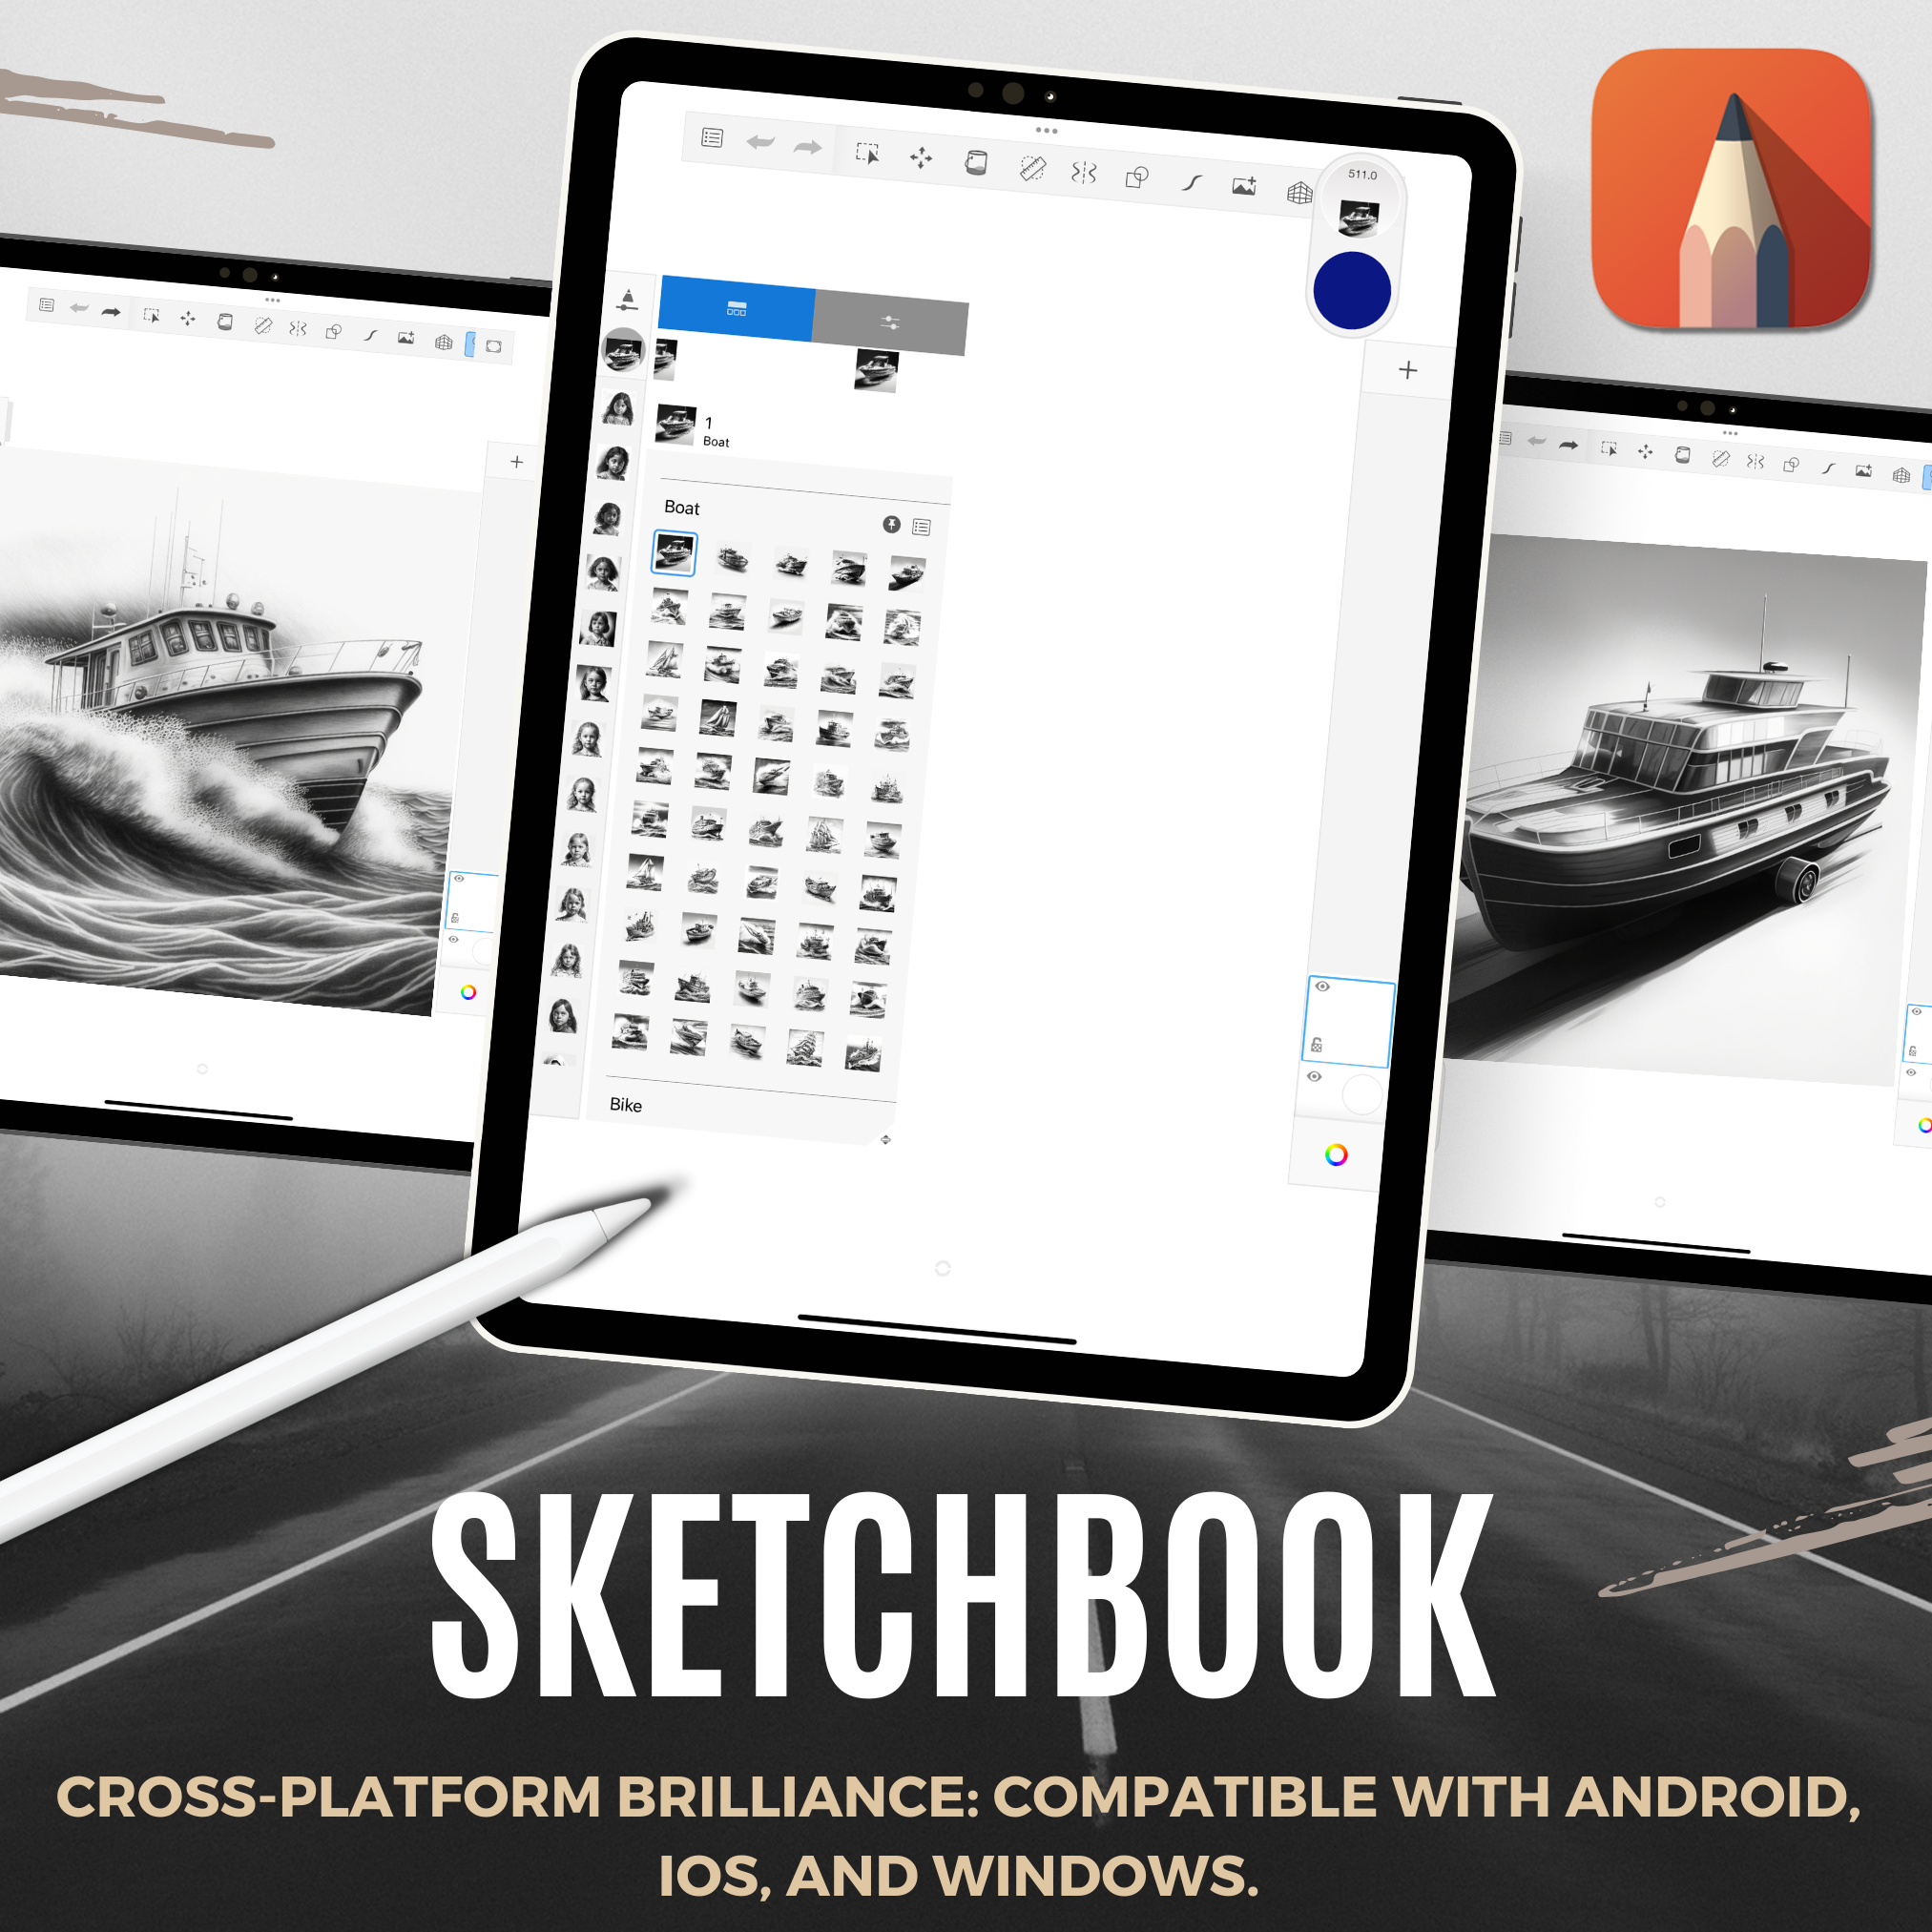 Boats Digital Design Collection: 50 Procreate & Sketchbook Images